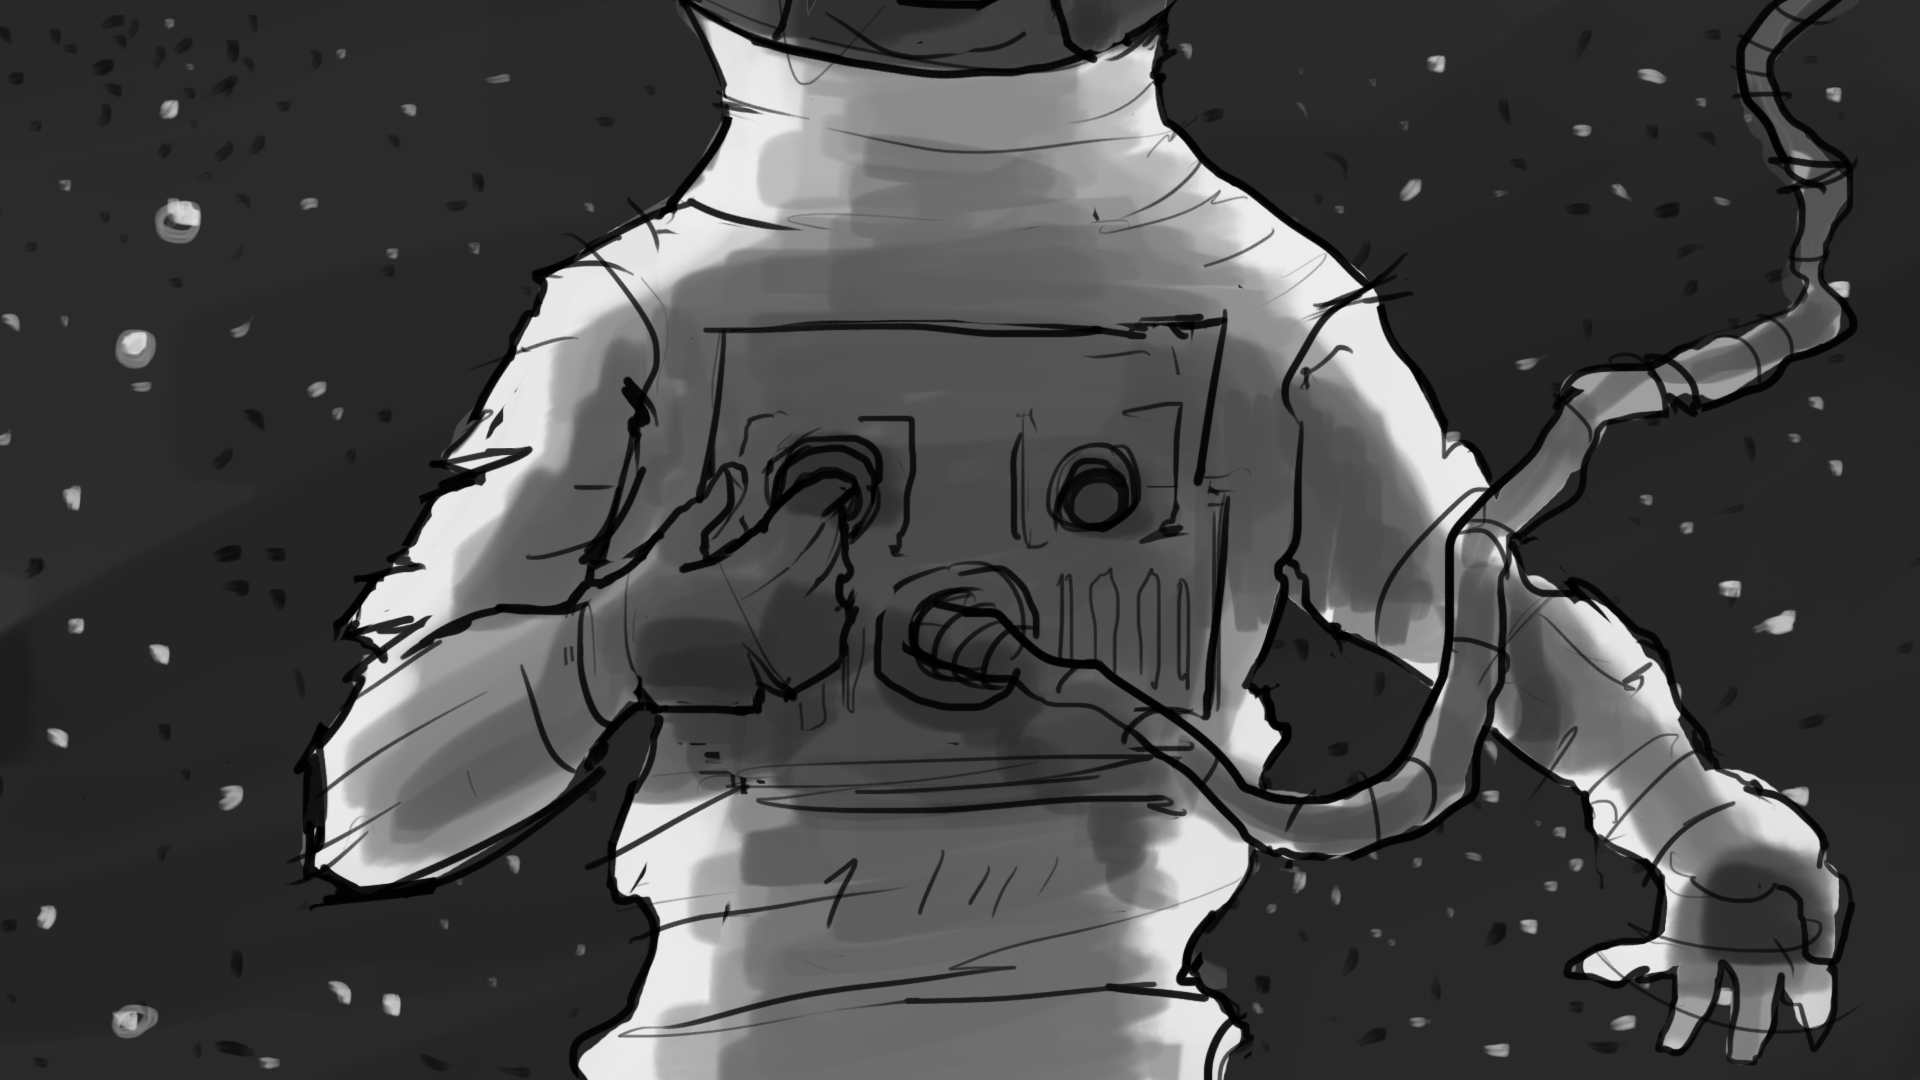 Rocket_Man_Storyboard_Artboard 13.jpg